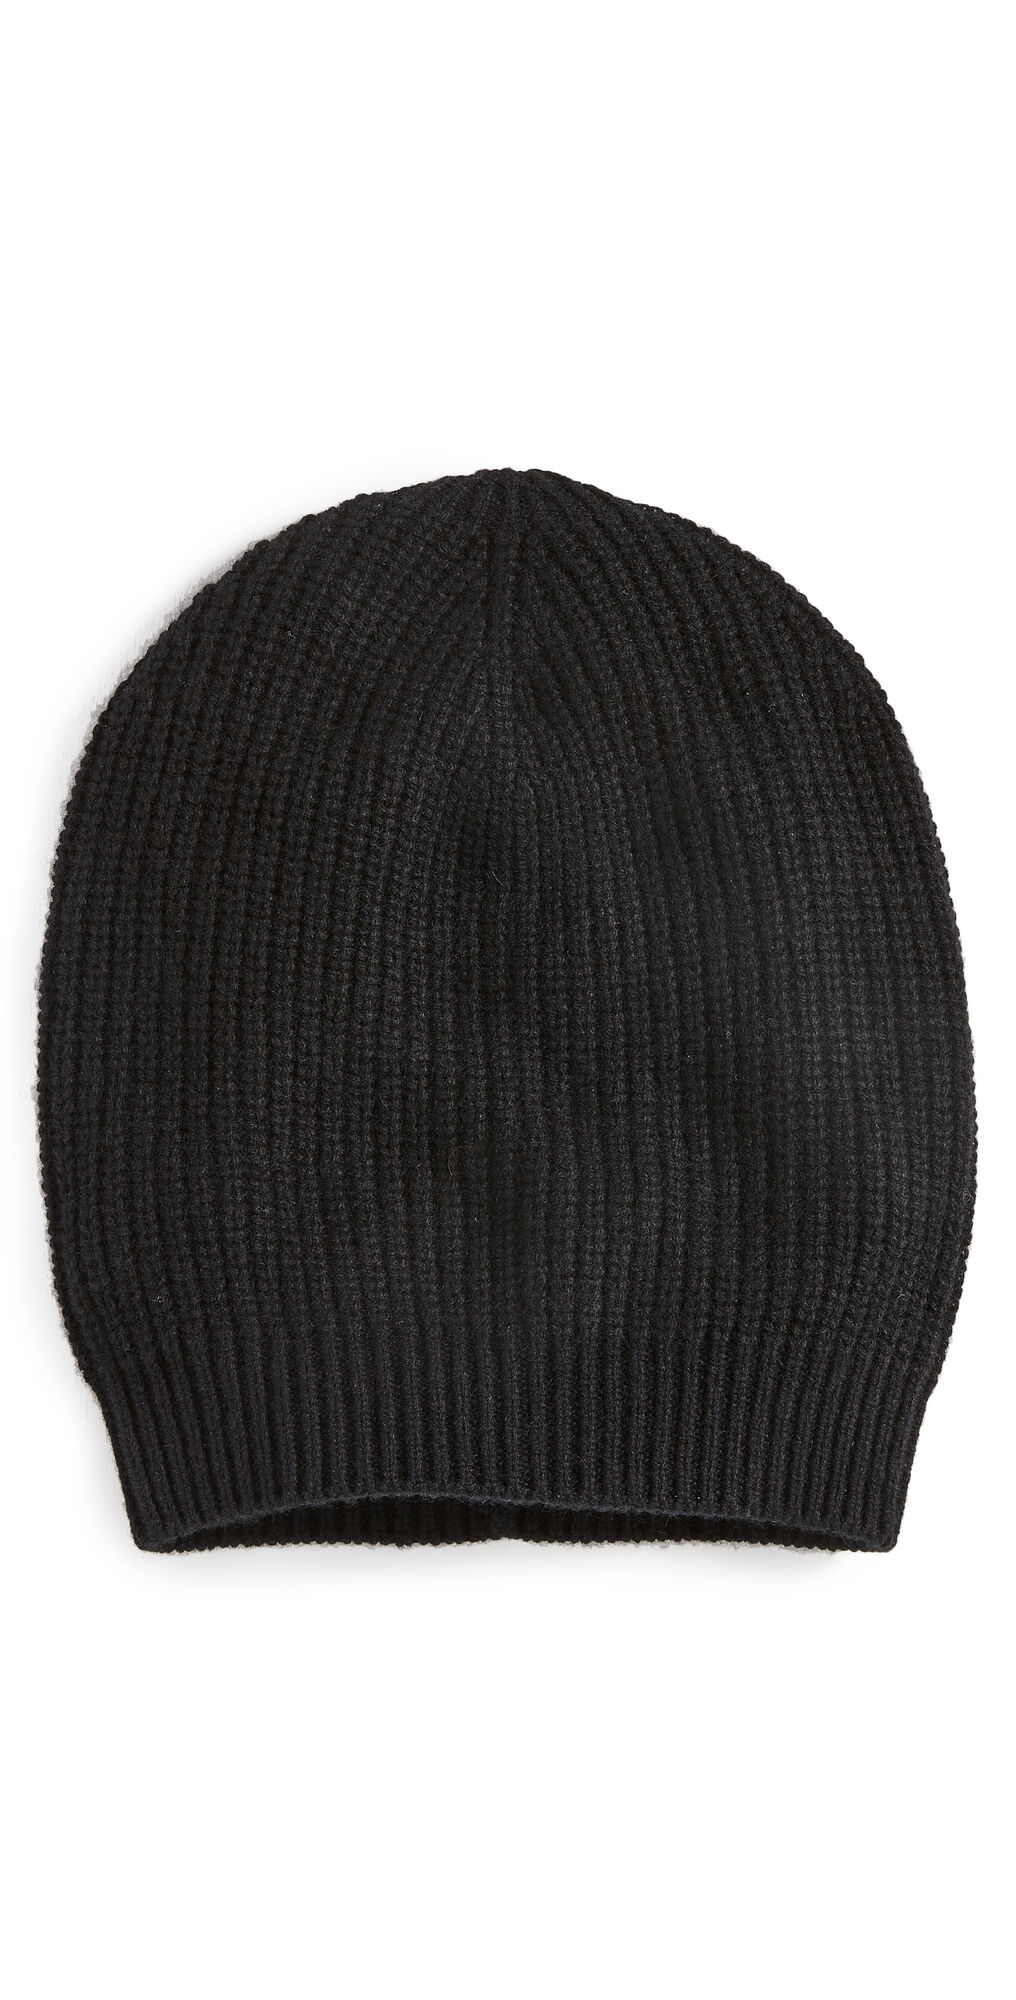 Carolina Amato Cashmere Bulky Rib Hat Black One Size  Black  size:One Size